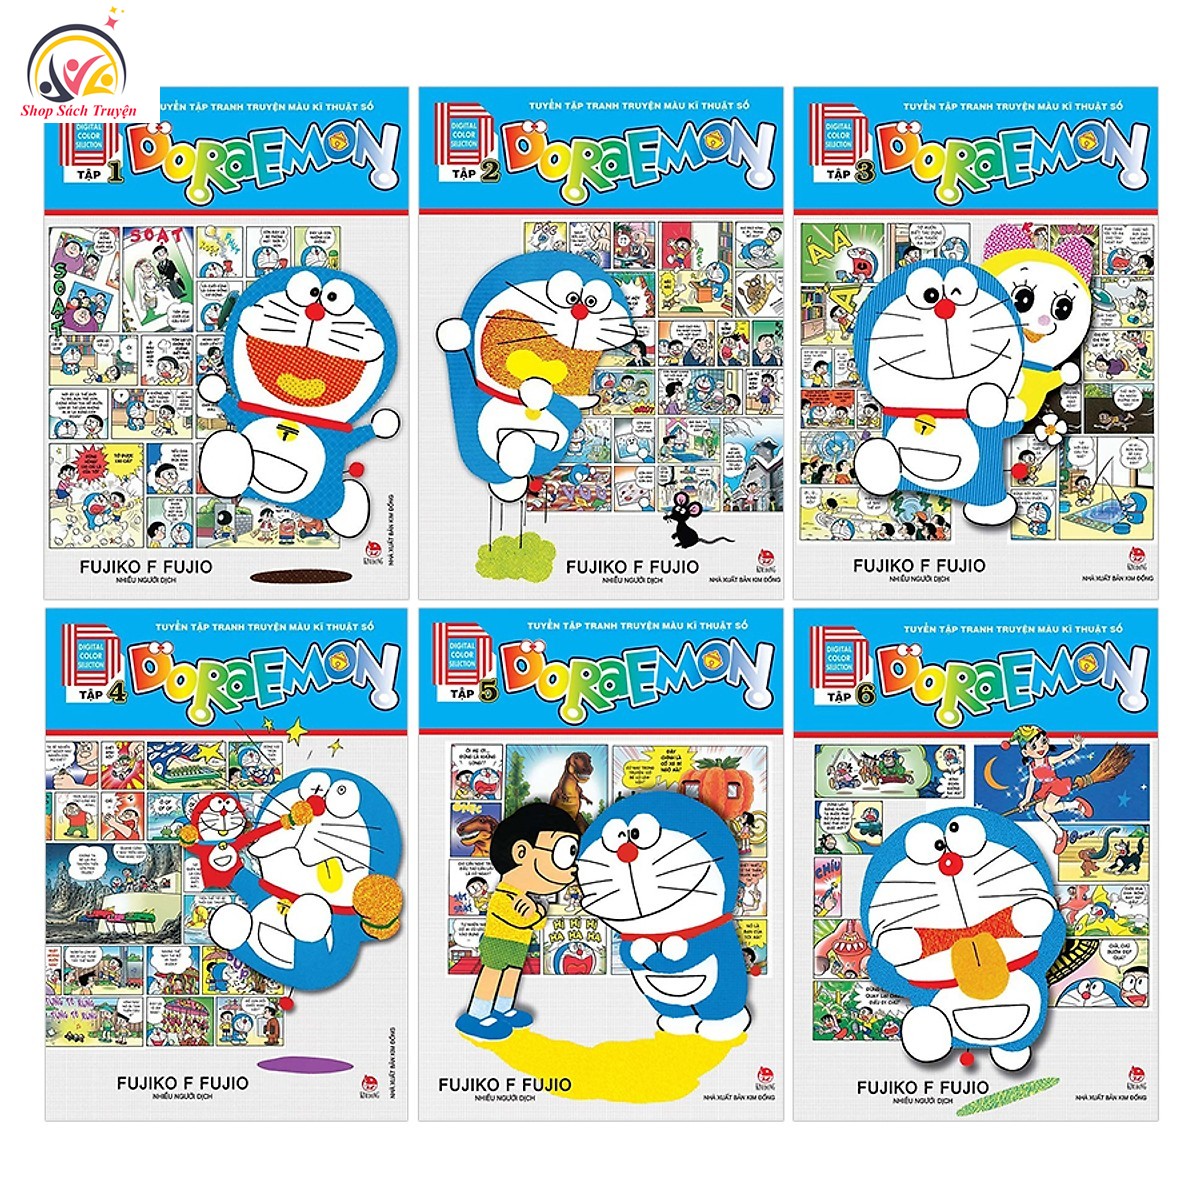 Tuyển tập tranh truyện màu kĩ thuật Doraemon: Tận mắt chứng kiến các phát minh thú vị của Doraemon và thành công duy trì hòa bình trong chuyện truyện màu kĩ thuật của Doraemon. Bạn sẽ đắm chìm trong hình ảnh đầy sắc màu và chi tiết tinh tế. Bấm vào hình và khám phá ngay!